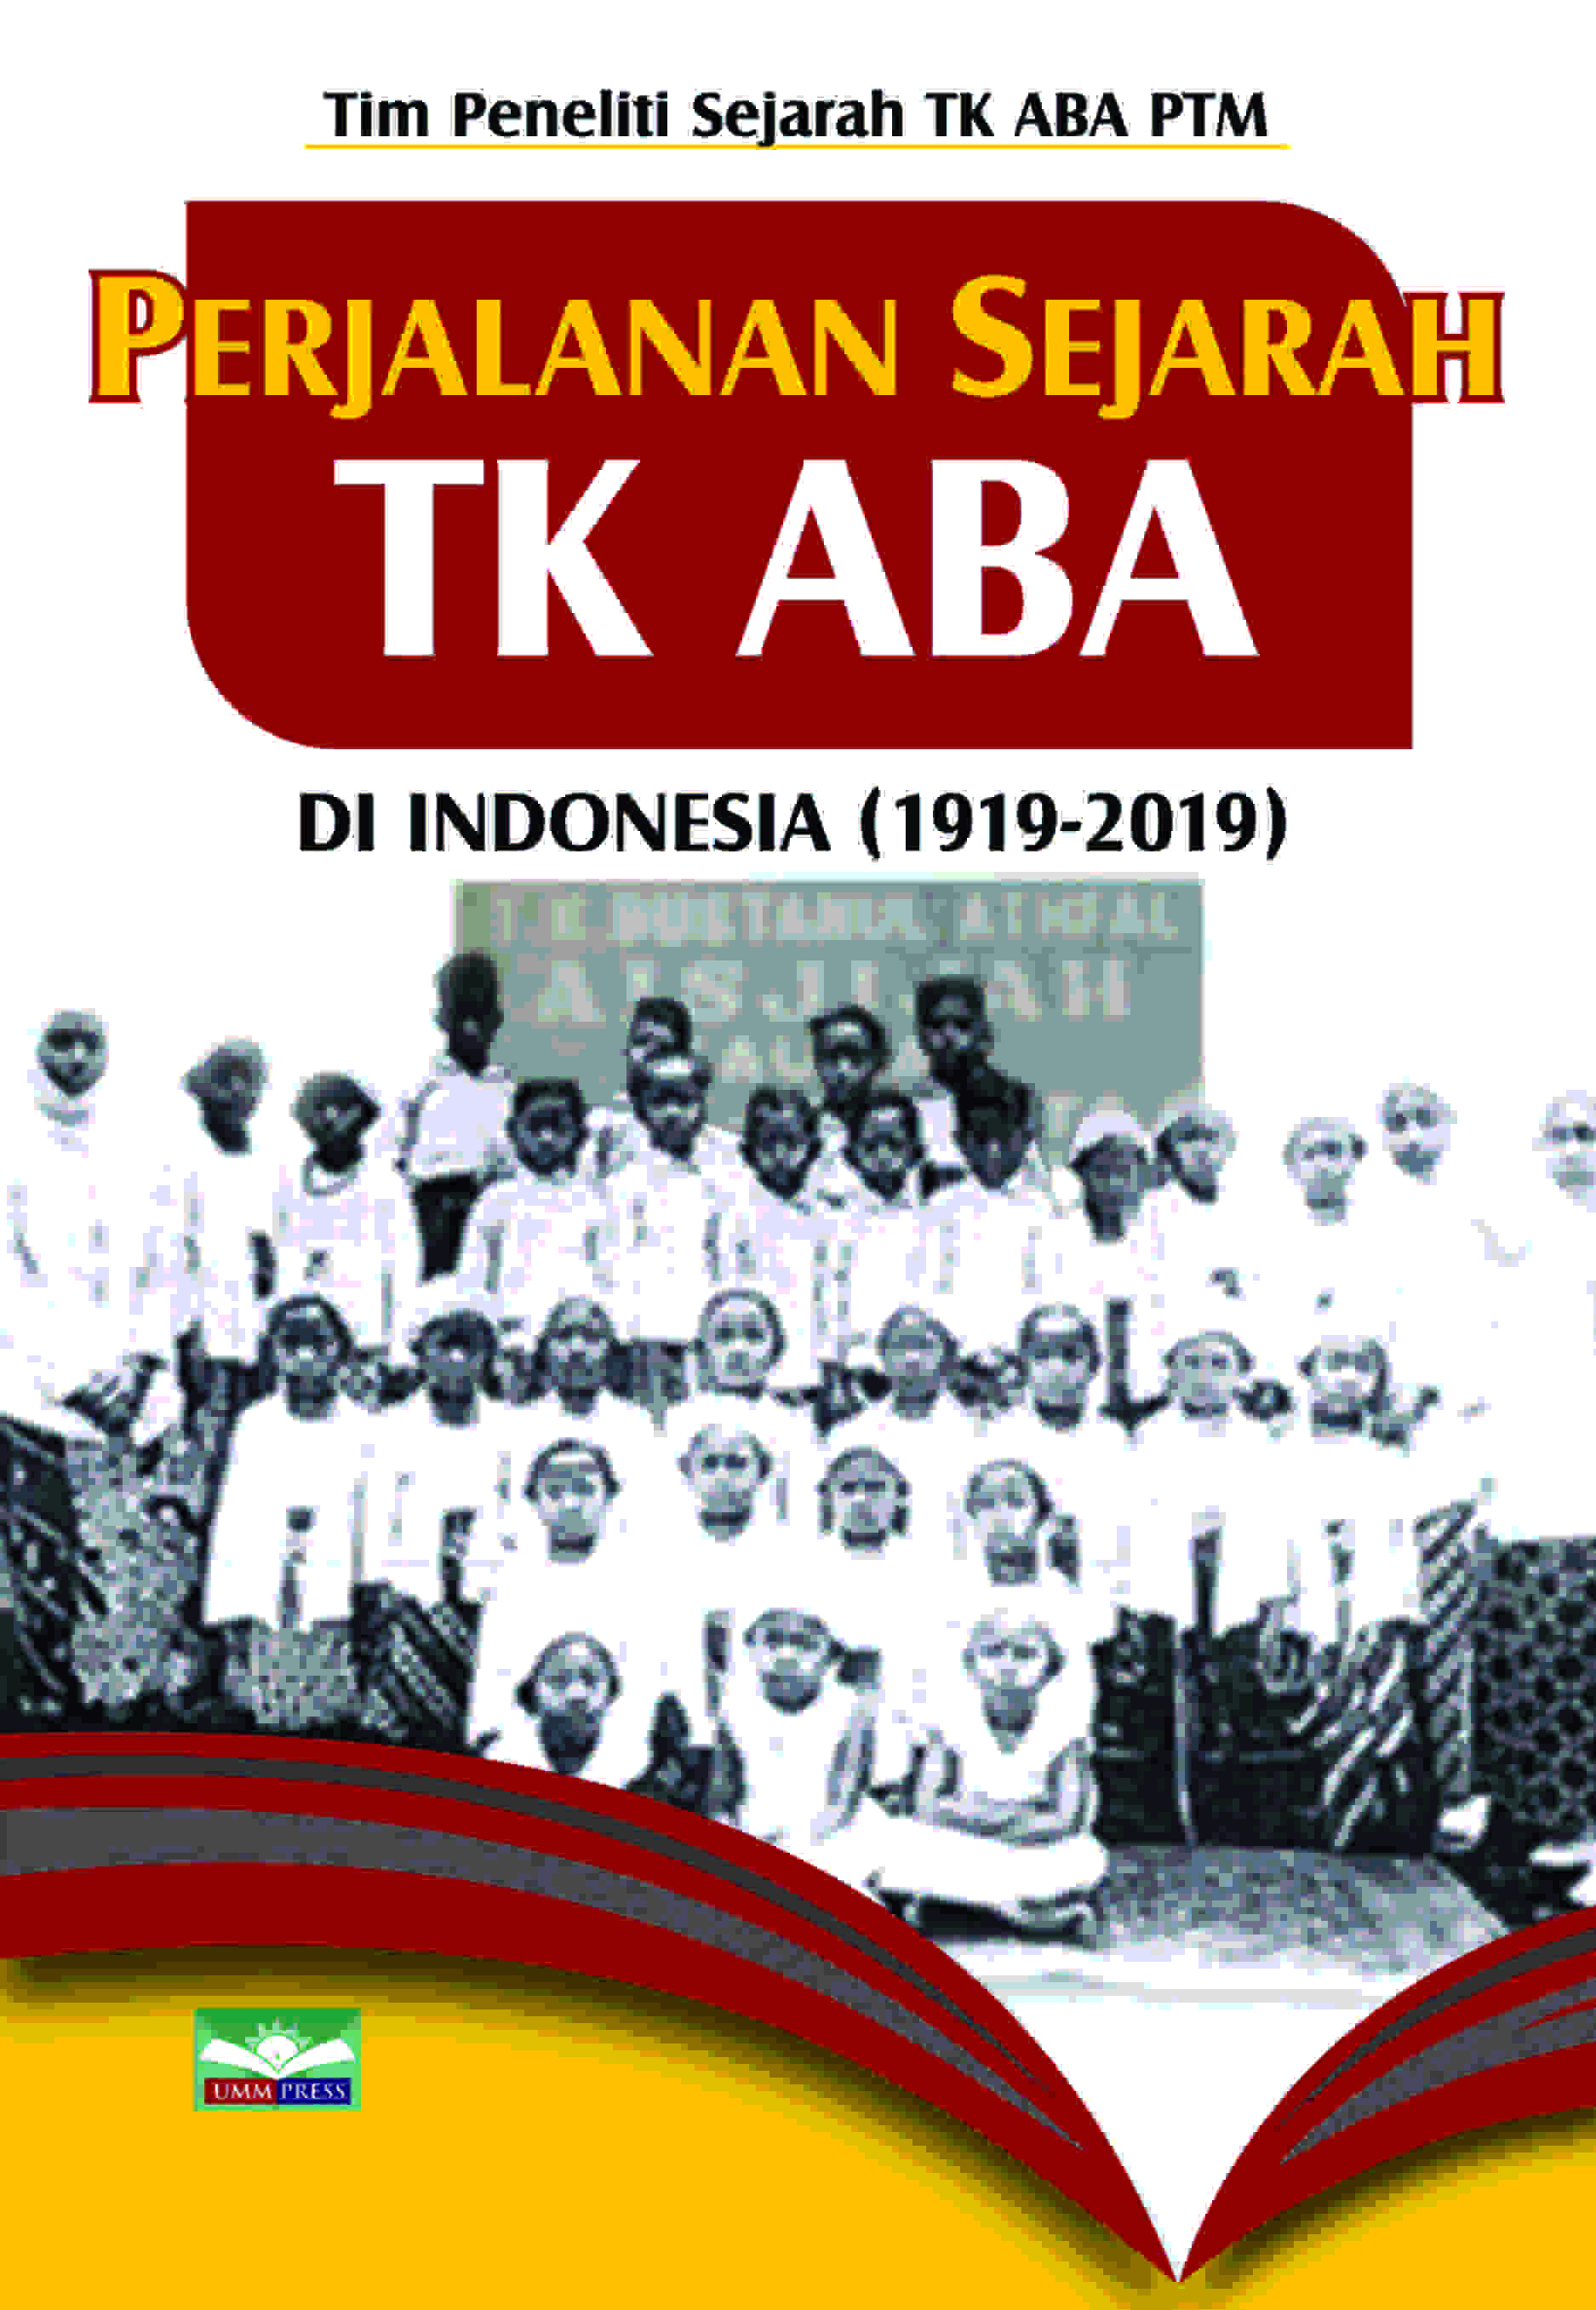 PERJALANAN SEJARAH TK ABA DI INDONESIA (1919-2019)